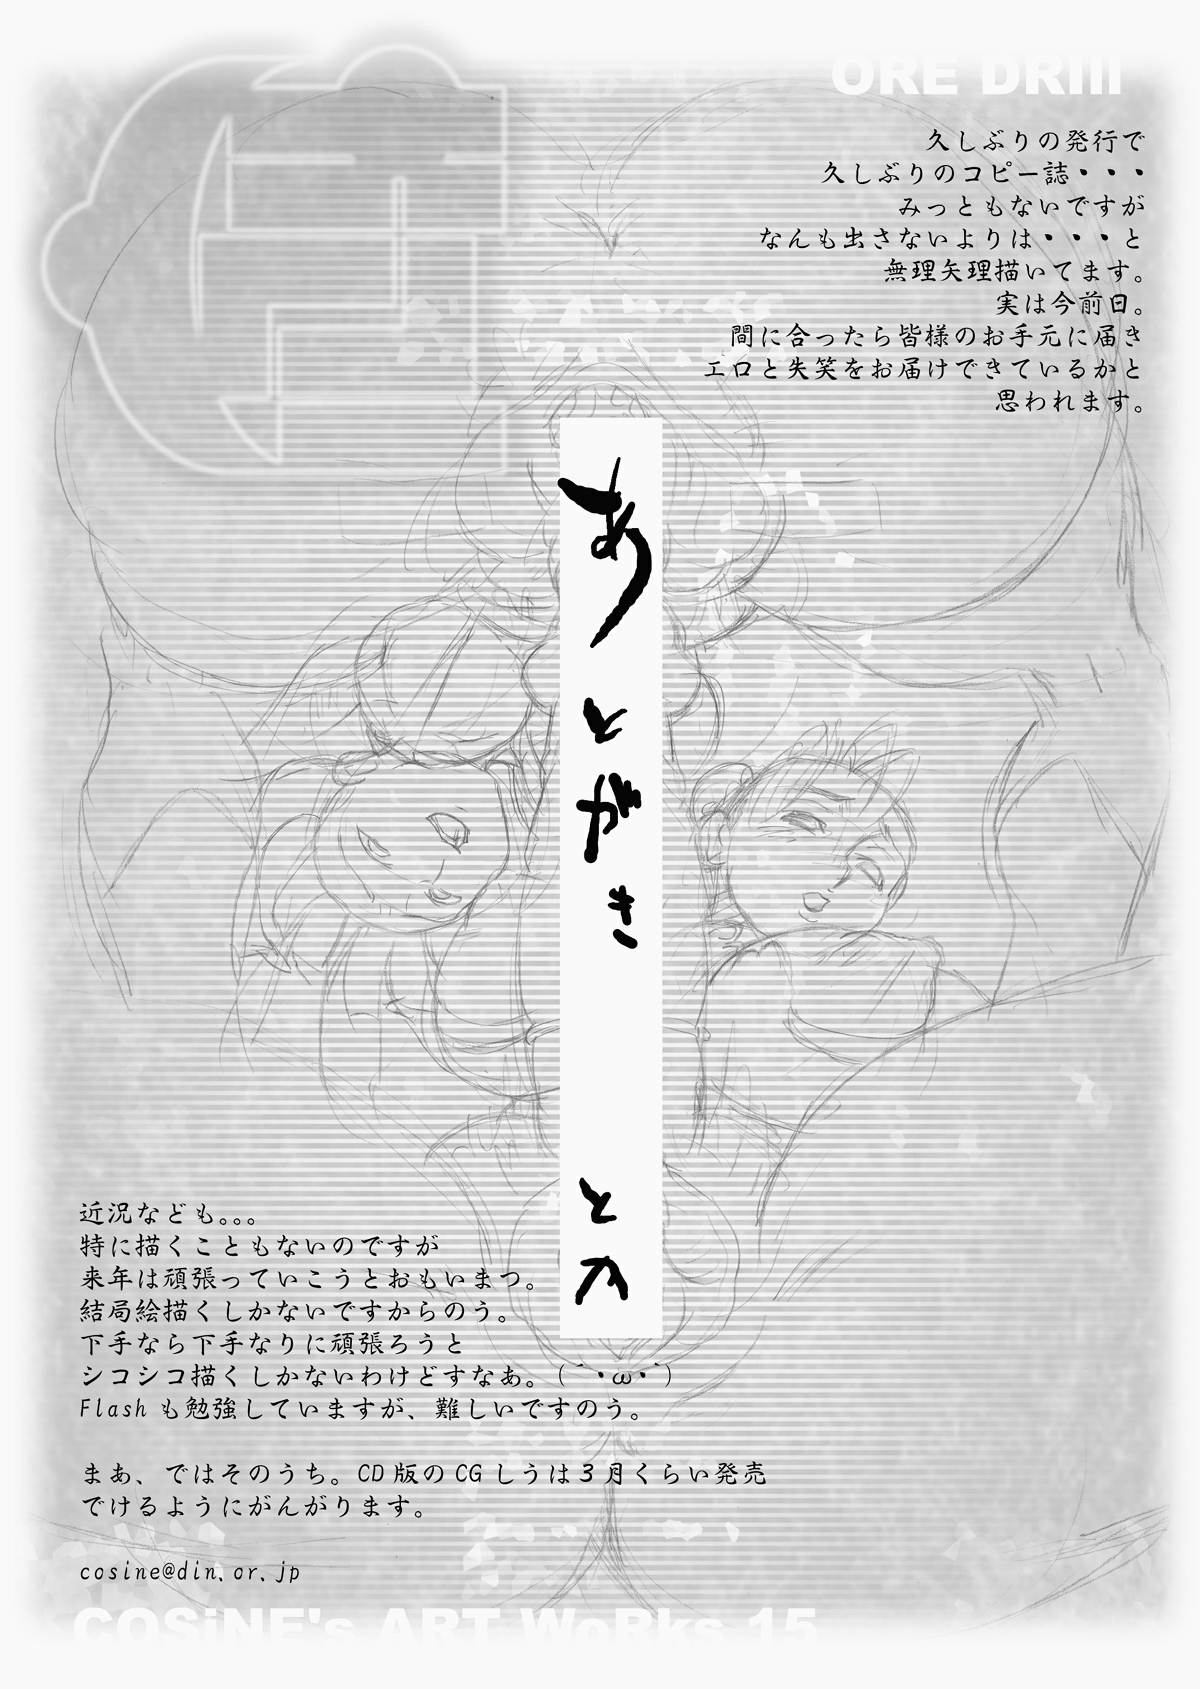 [満珍楼 (COSiNE)] DRILL SERIES Vol. 15 俺ドリル (カプコン)